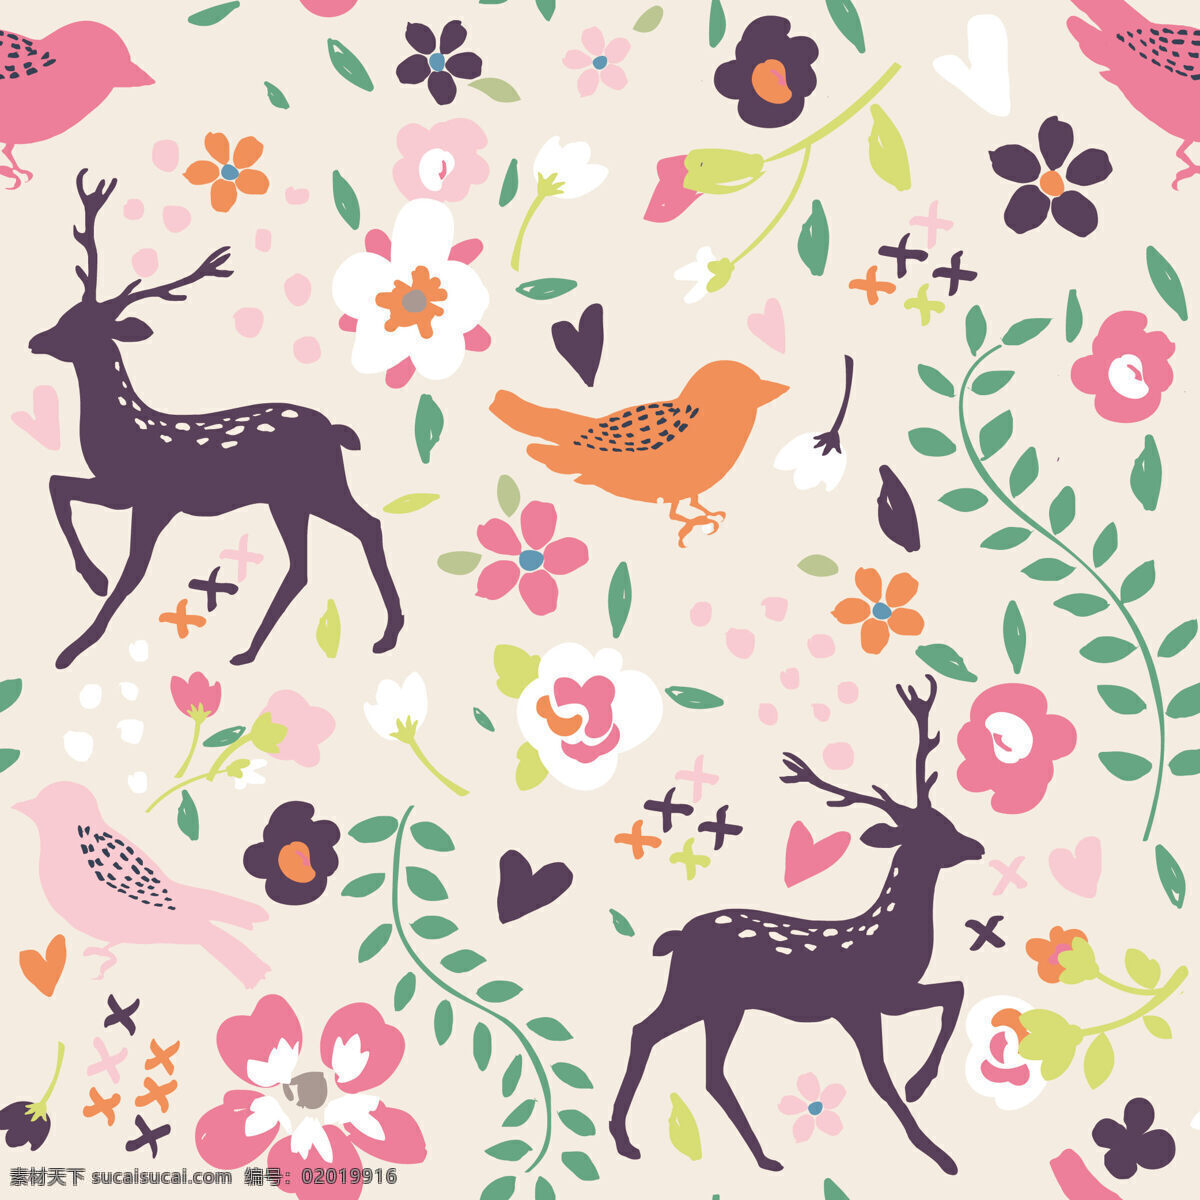 粉色 清纯 时尚 麋鹿 壁纸 图案 装饰设计 浅粉底色 壁纸图案 粉色花朵 绿色树叶